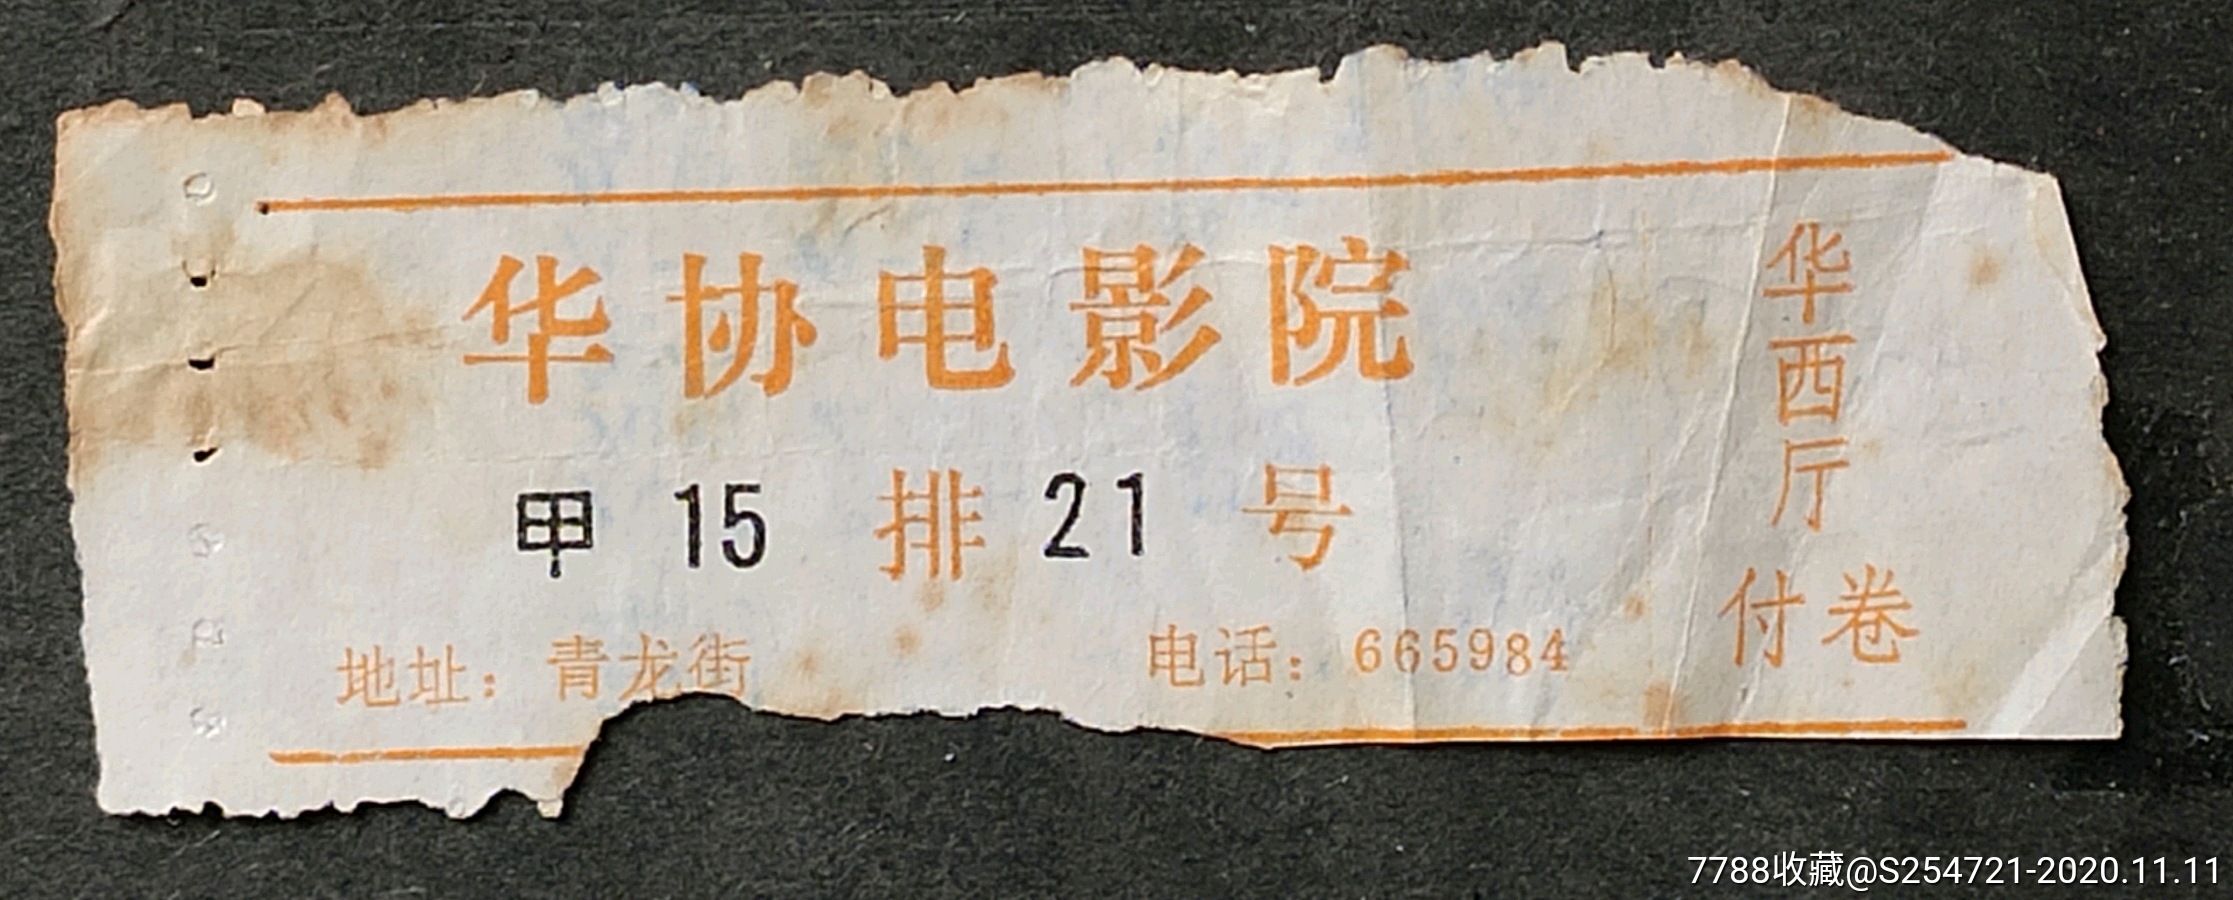 成都华协电影院票1989年